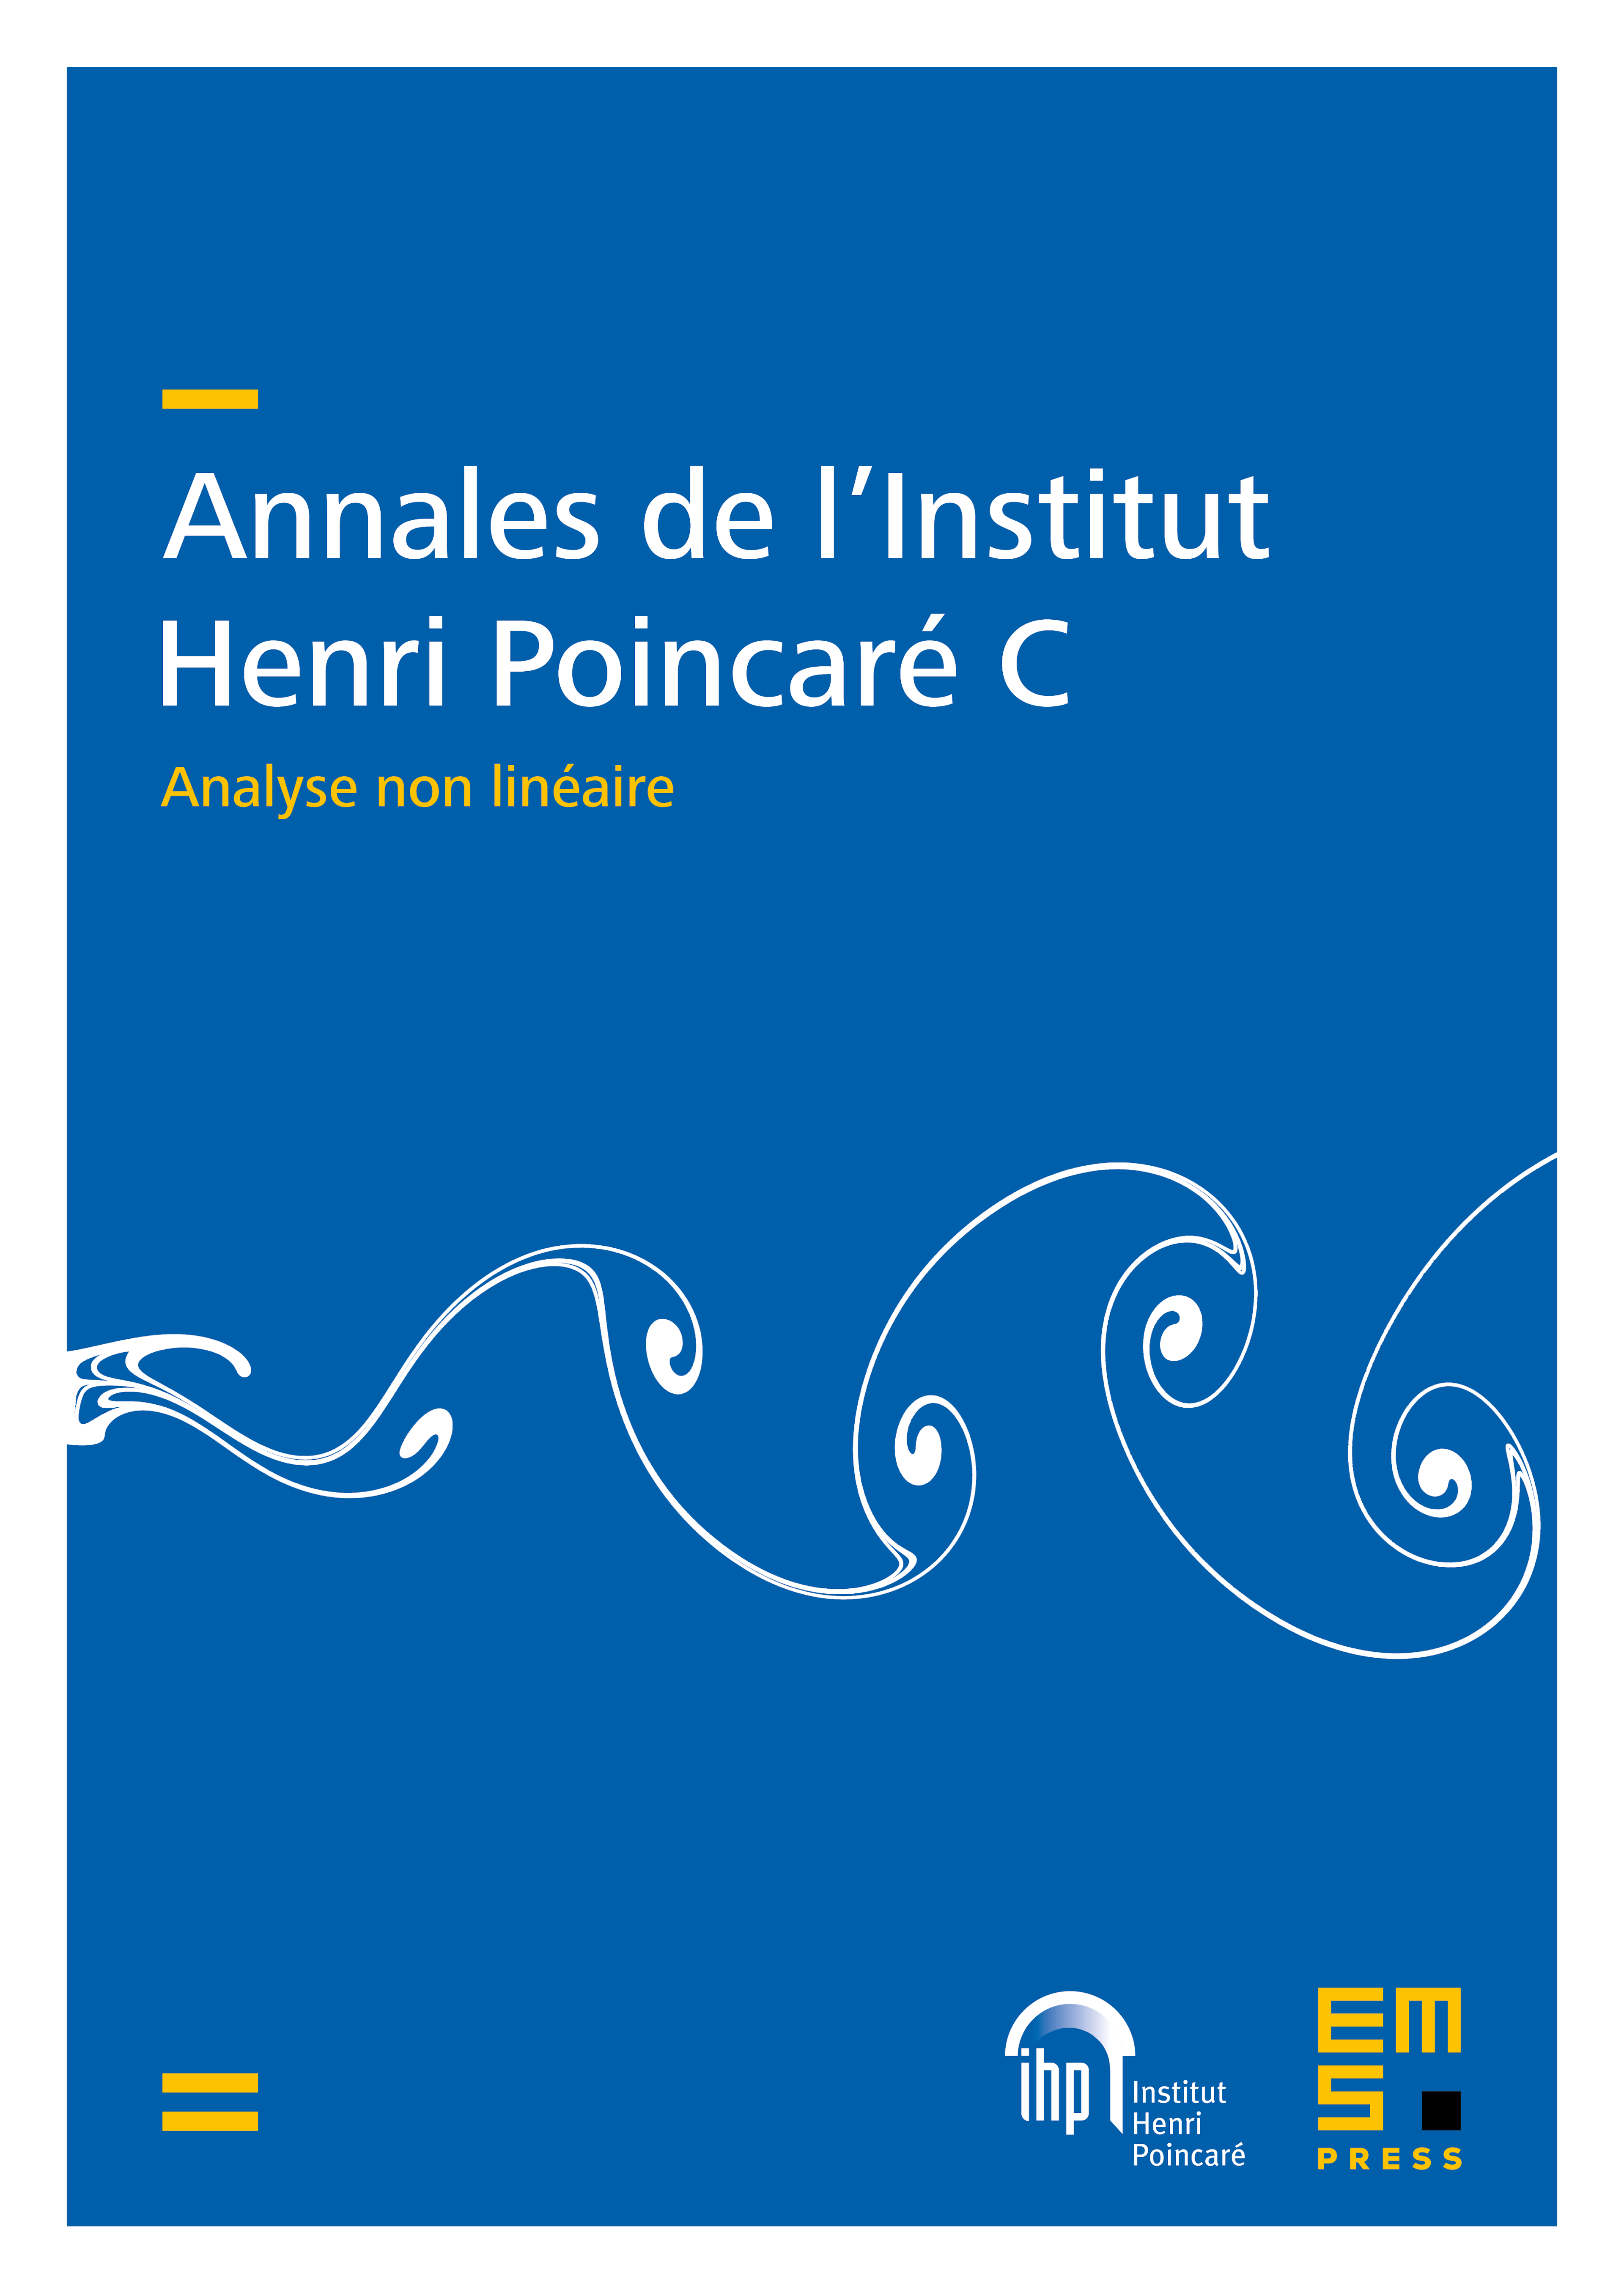 Annales de l'Institut Henri Poincaré C cover